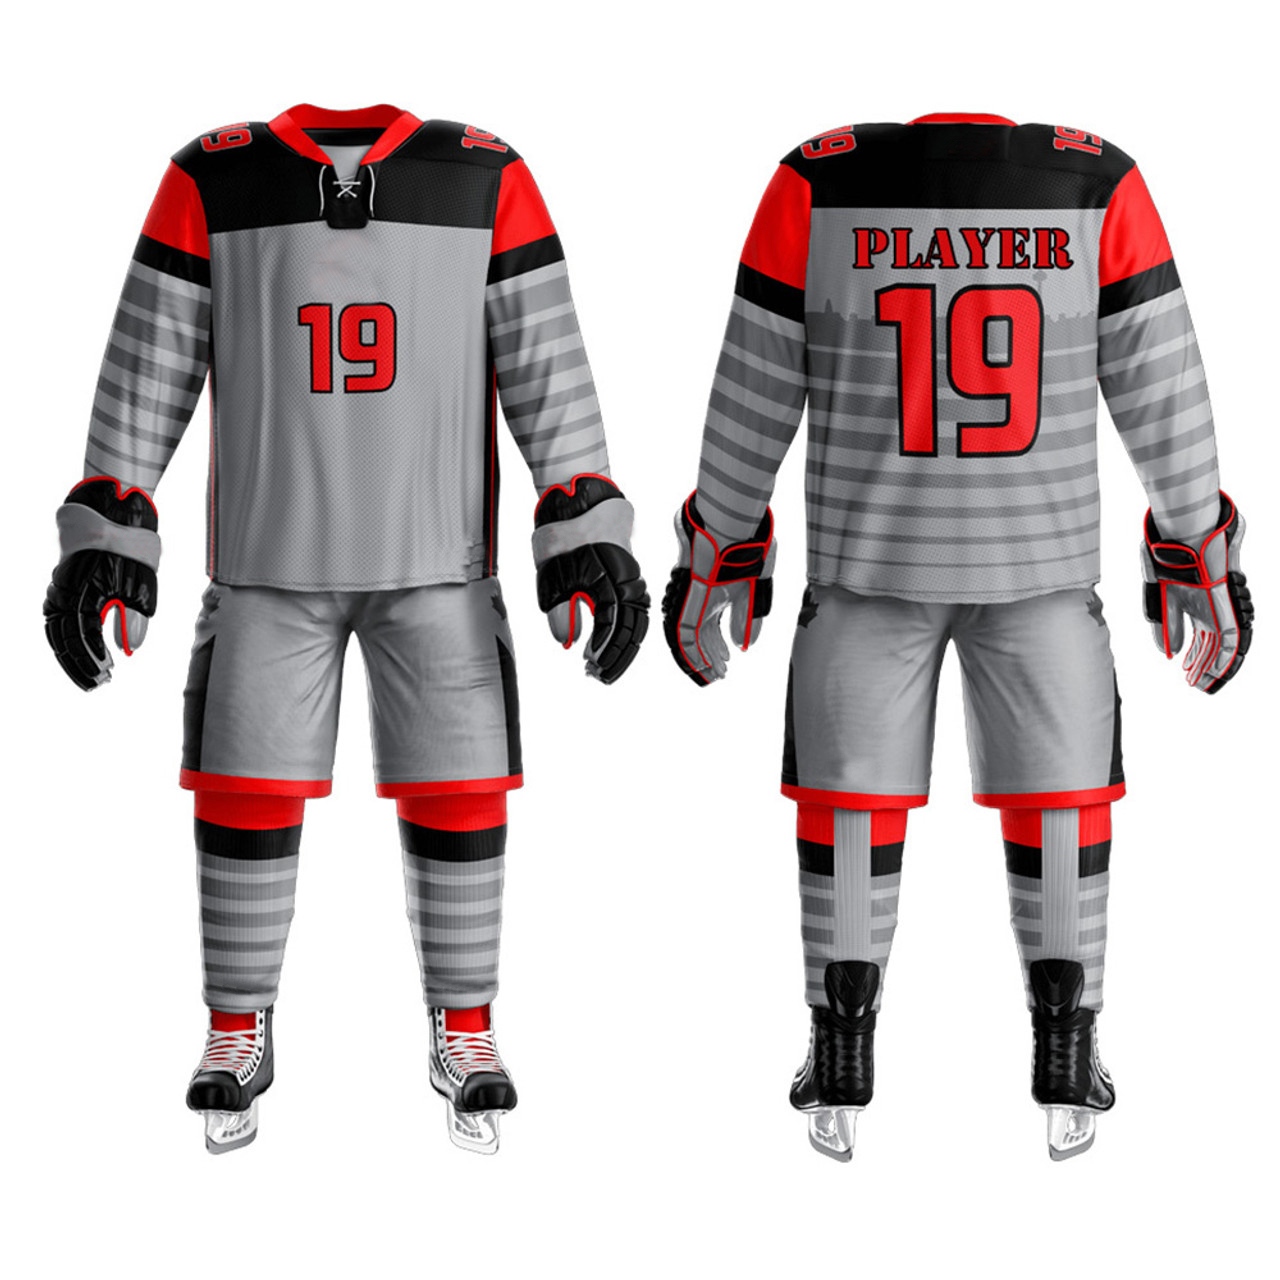 Custom hockey jerseys customized hockey bags and gloves and team